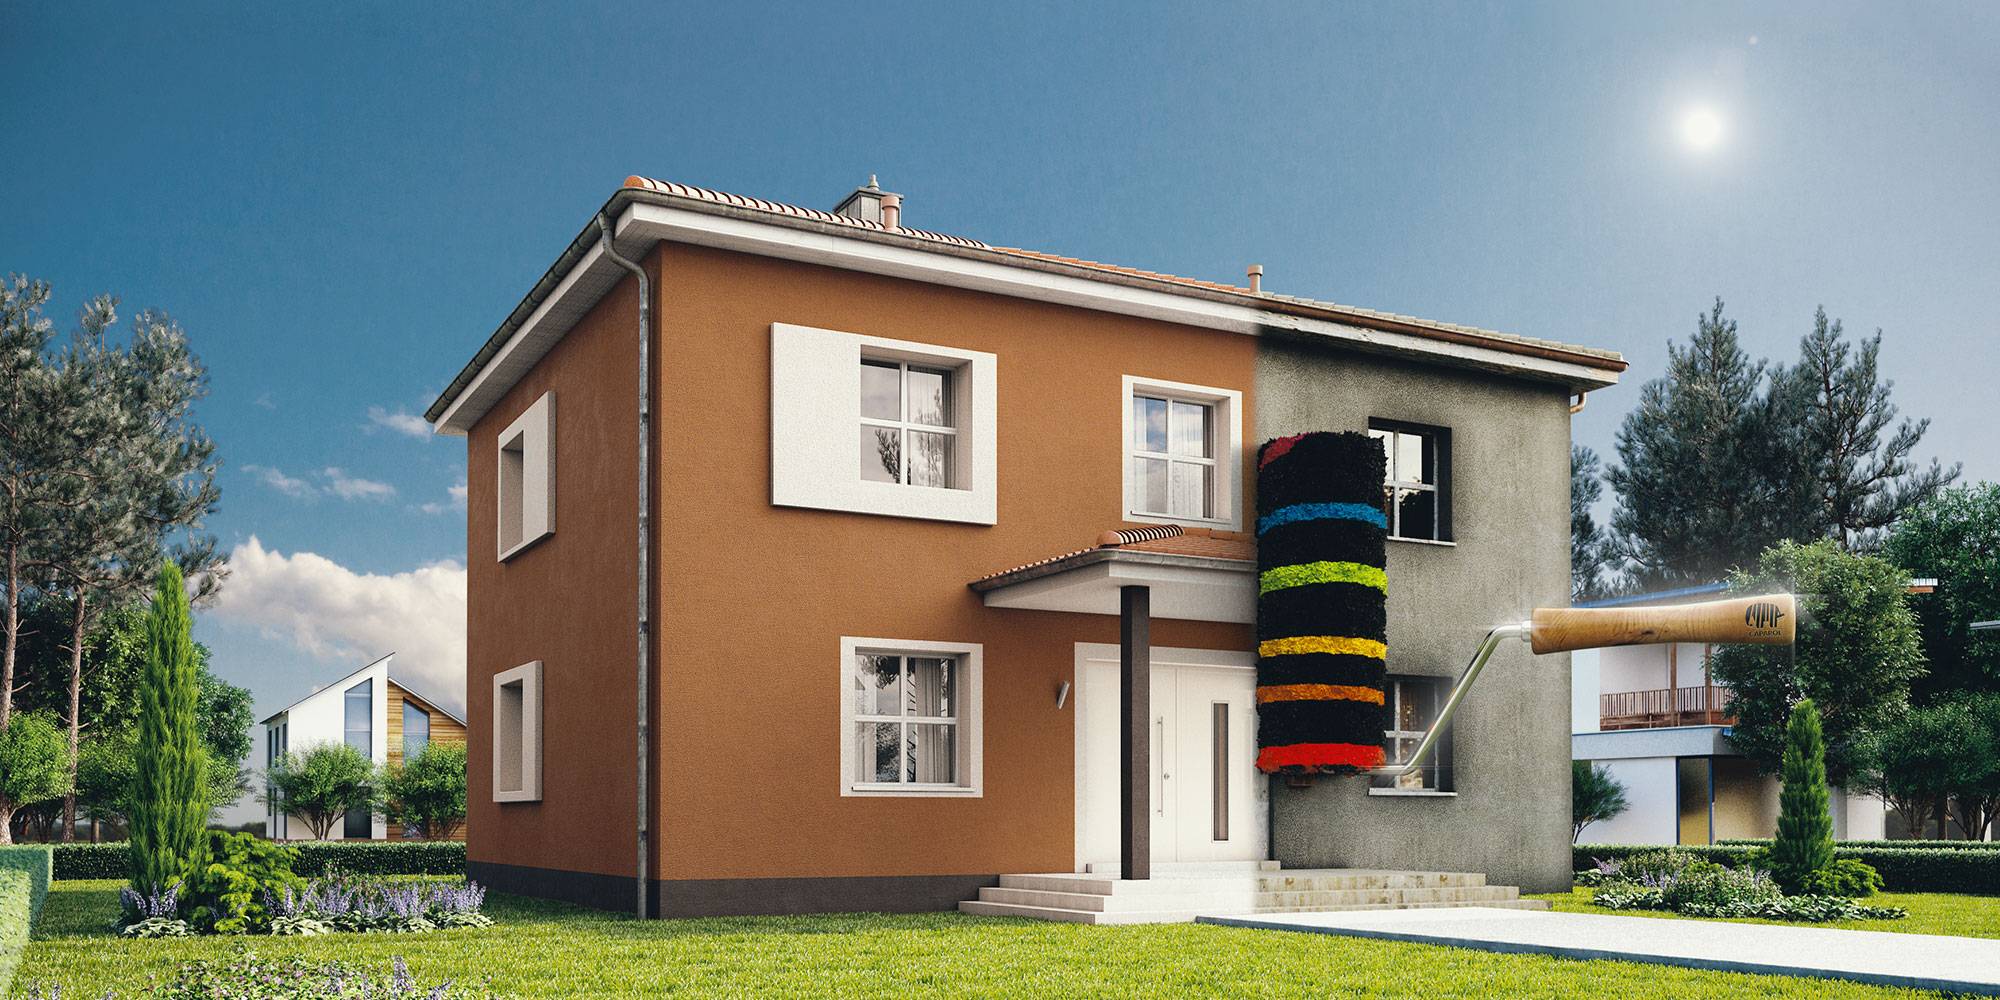 Какой краской покрасить фасад дома оштукатуренного?